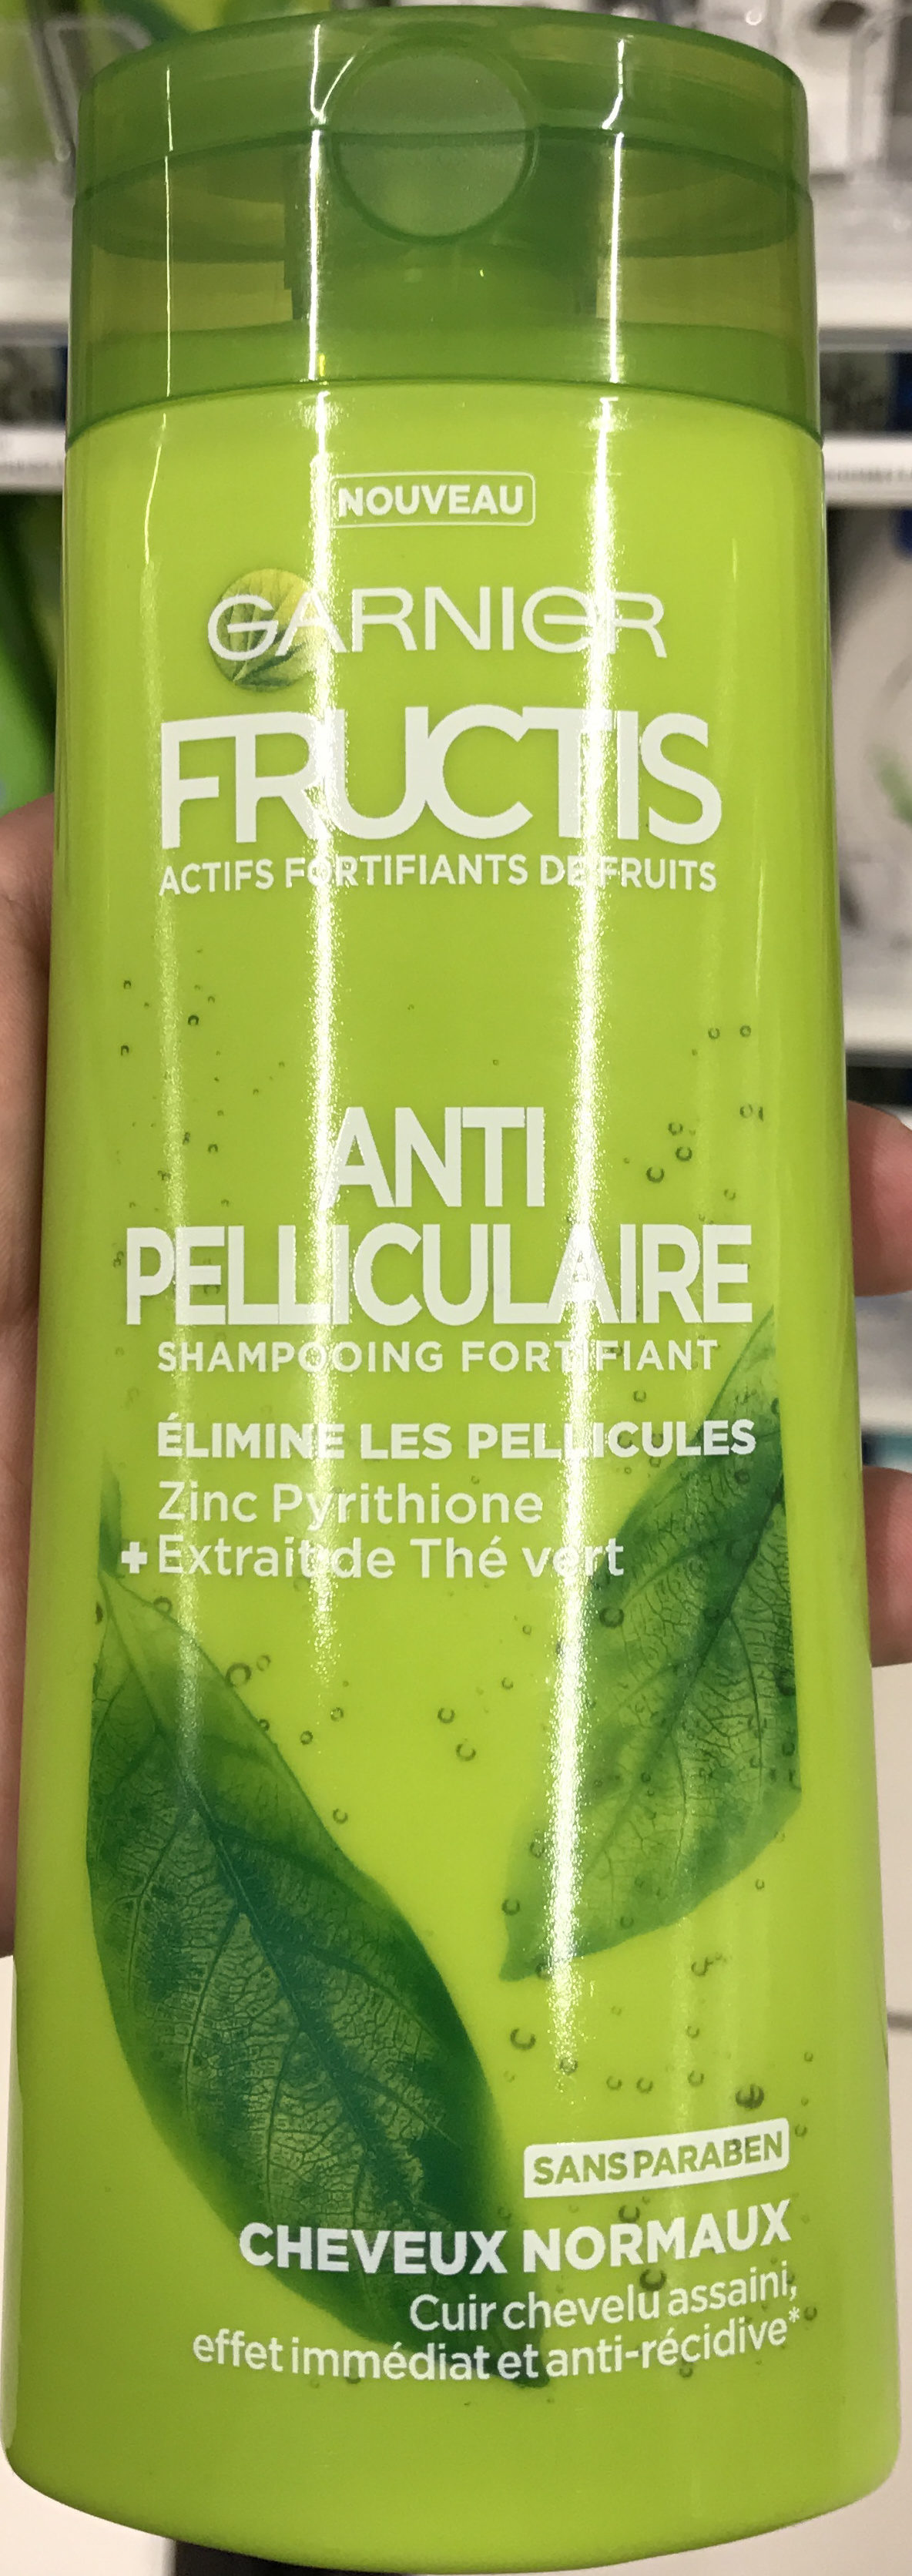 Fructis Anti-Pelliculaire - Produit - fr